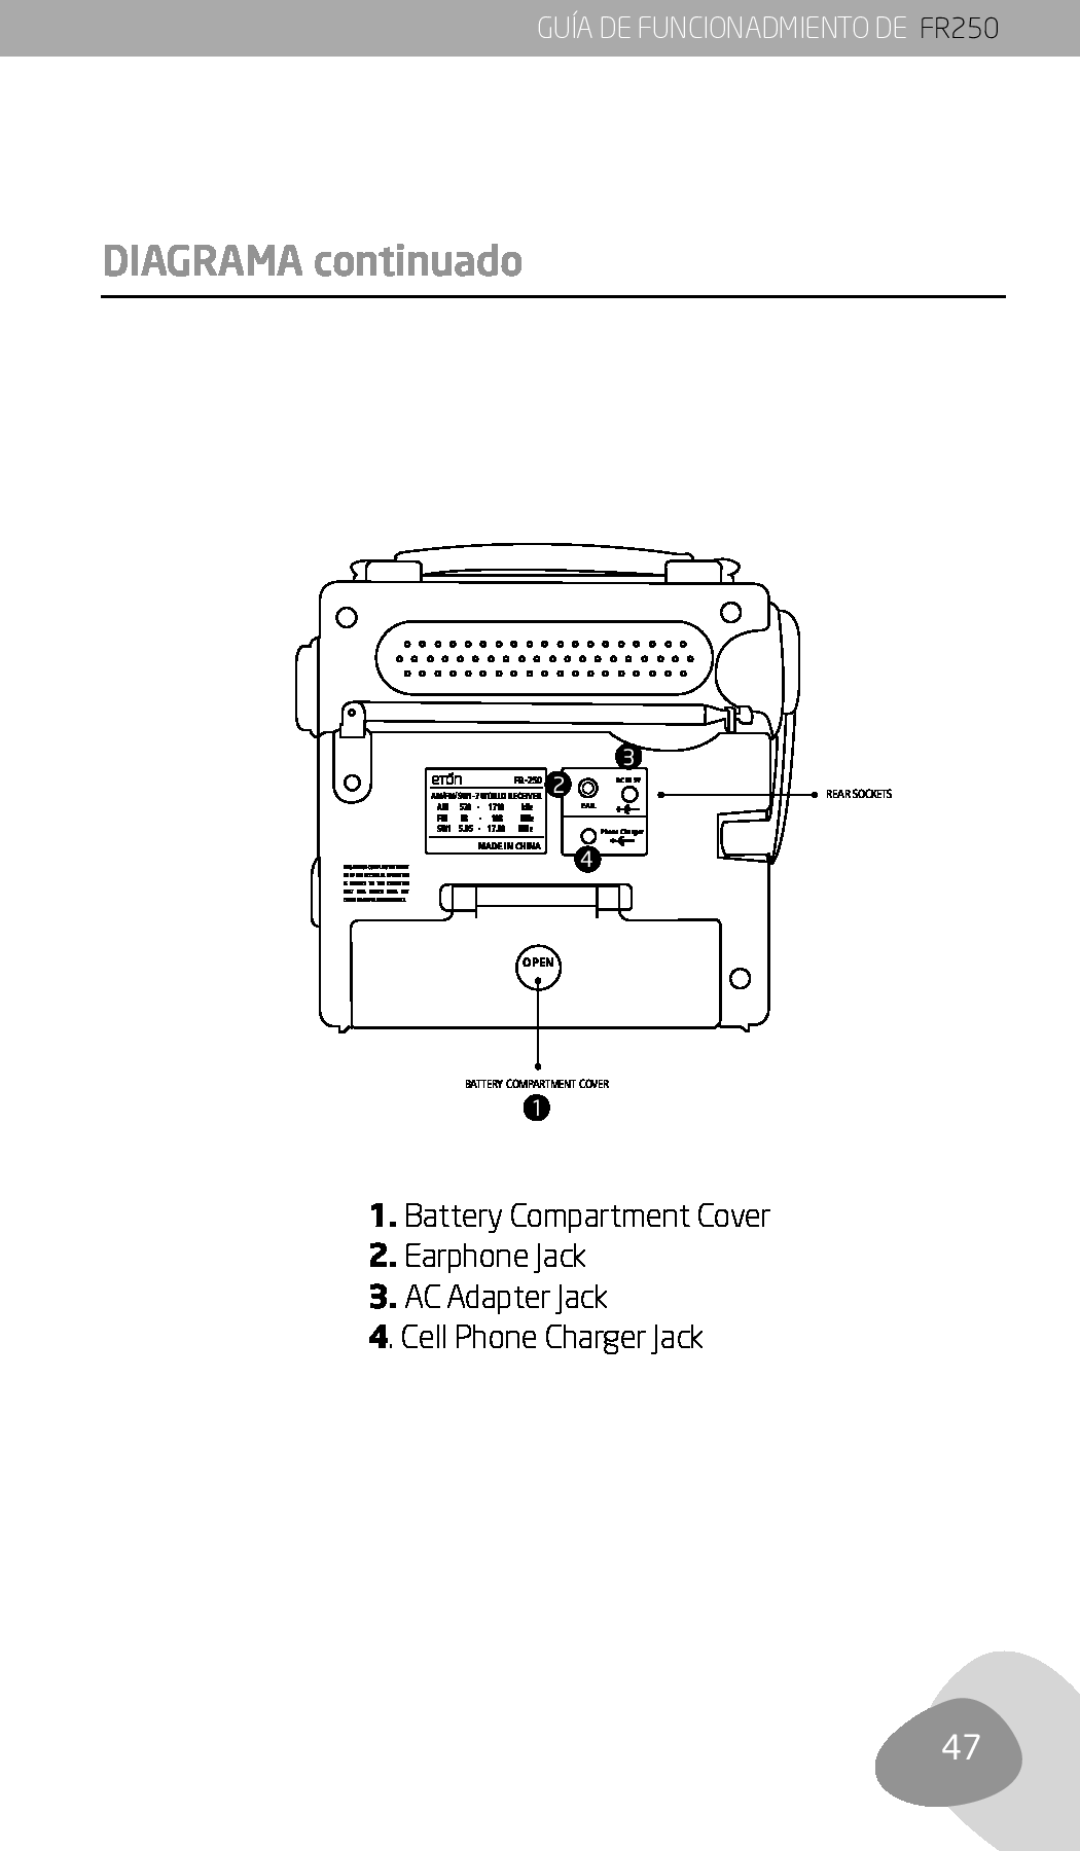 Eton owner manual Diagrama continuado, GUÍA DE FUNCIONADMIENTO DE FR250, Open, Battery Compartment Cover, Made In China 